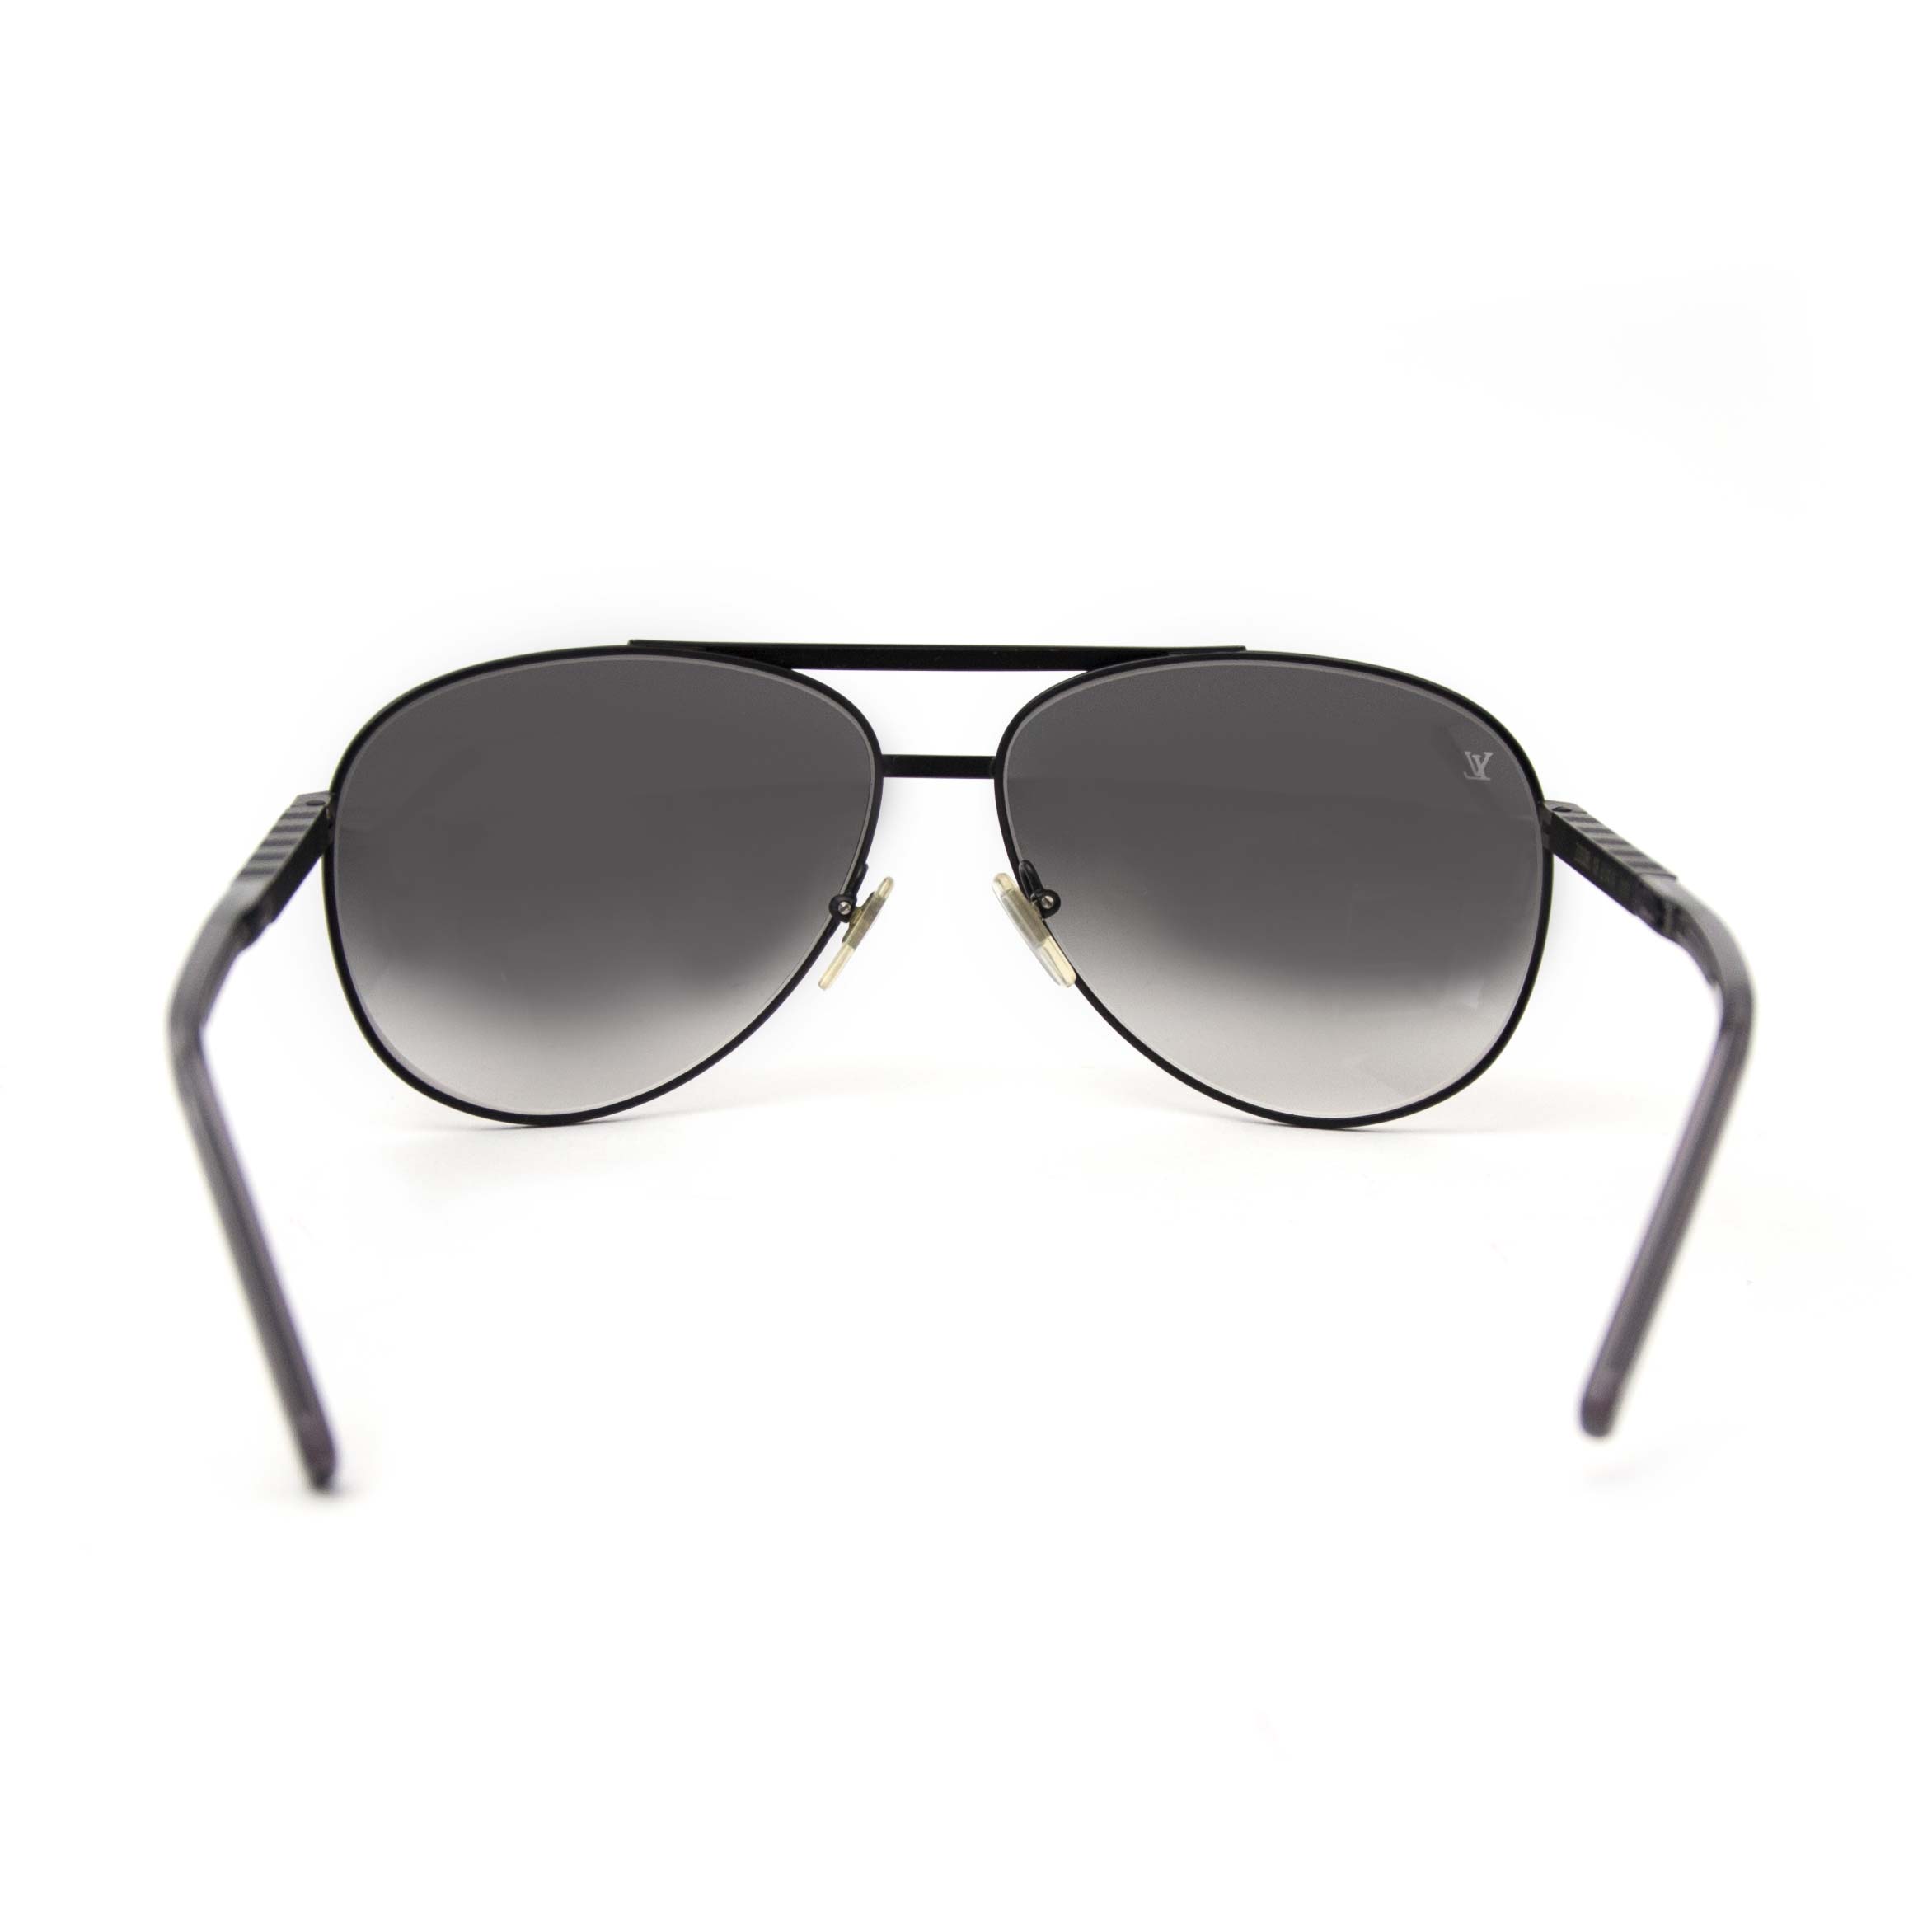 Attitude Pilote Pliante via Louis Vuitton  Louis vuitton sunglasses,  Aviator sunglasses style, Louis vuitton